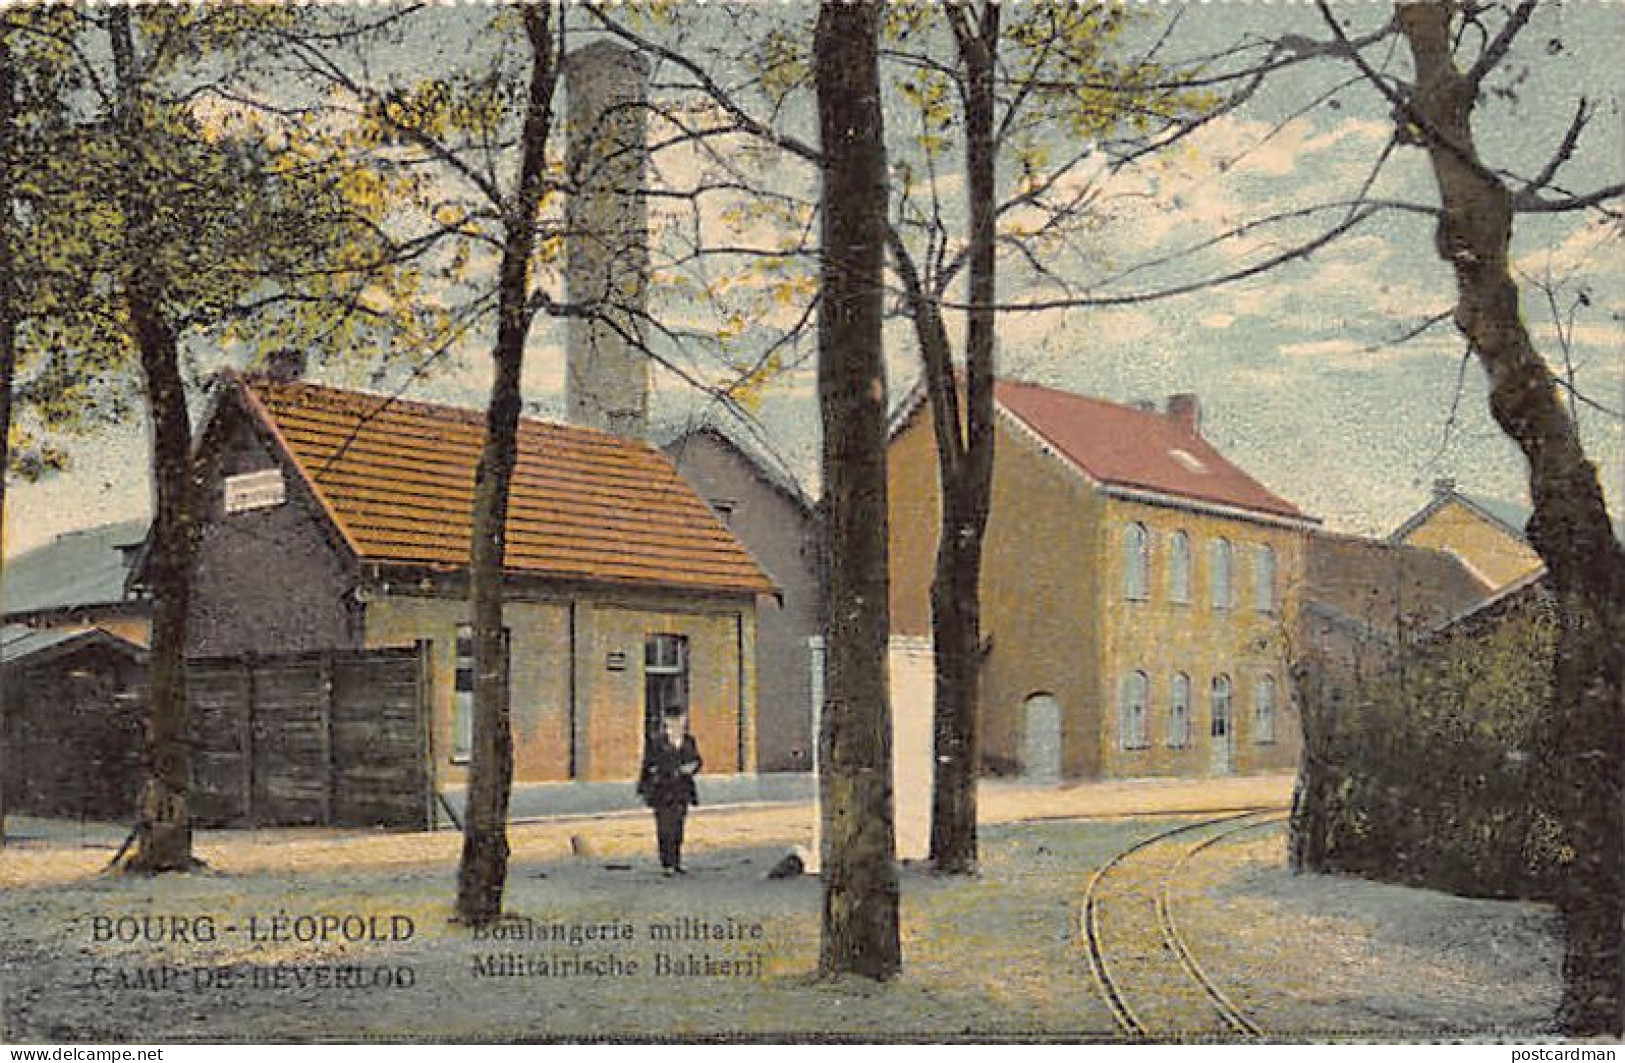 België - LEOPOLDSBURG (Camp De Beverloo) (Limb.) Militairische Bakkerij - Boulangerie Militaire - Leopoldsburg (Camp De Beverloo)